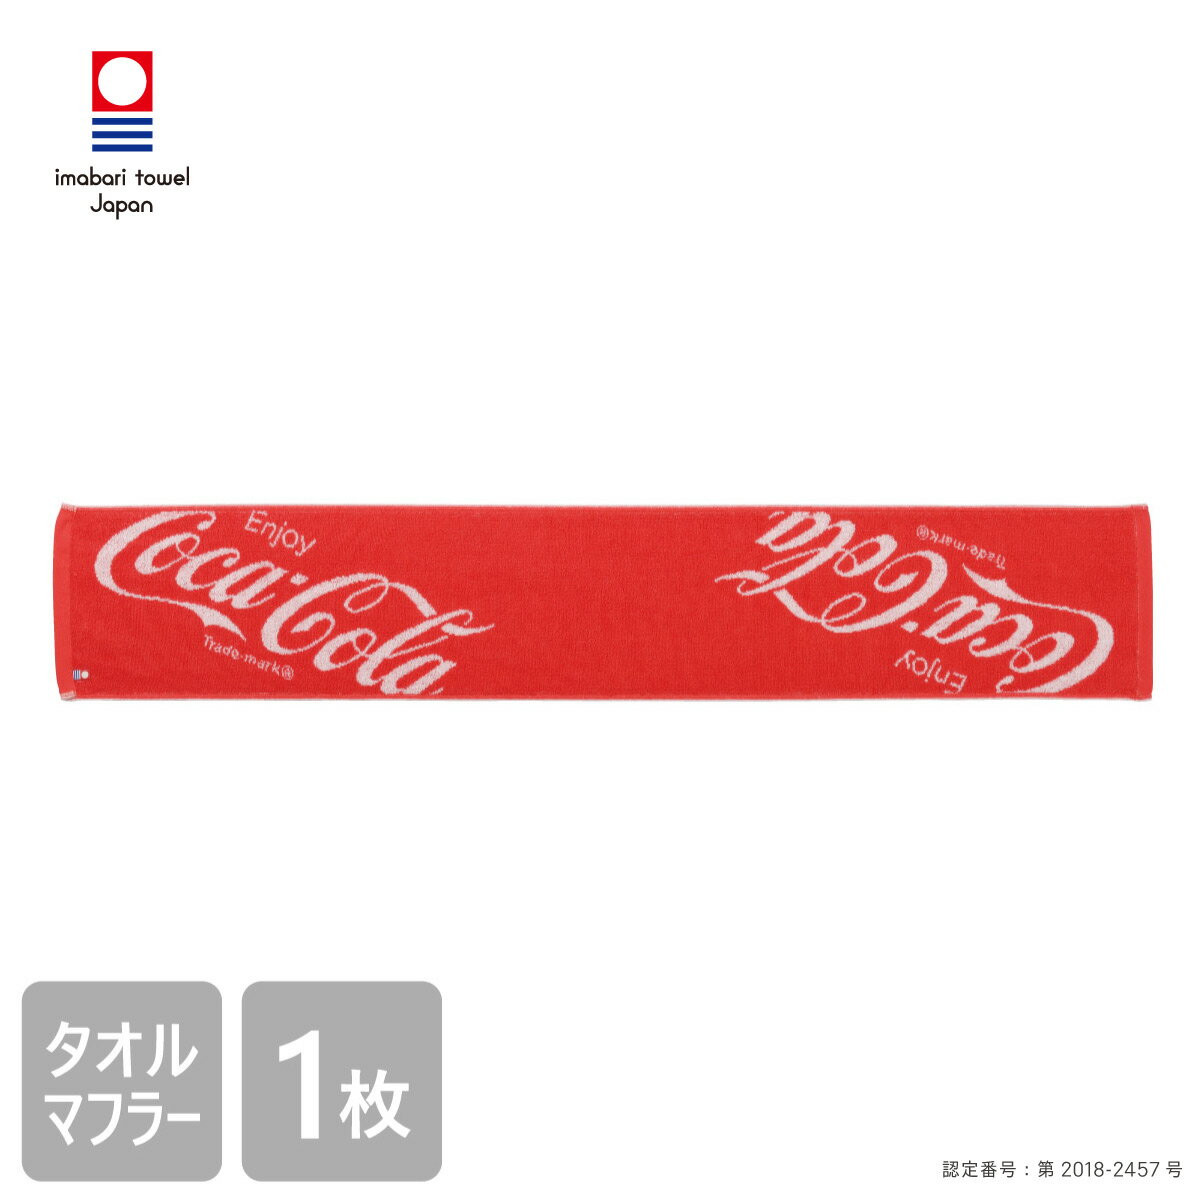 6/4 20:00からスーパーSALE！ 【送料無料】 コカ・コーラ 今治 タオルマフラー 20×110cm Coca・Cola グッズ 綿100％ 日本製 ジャガード かっこいい おしゃれ バラエティー 大人 こども